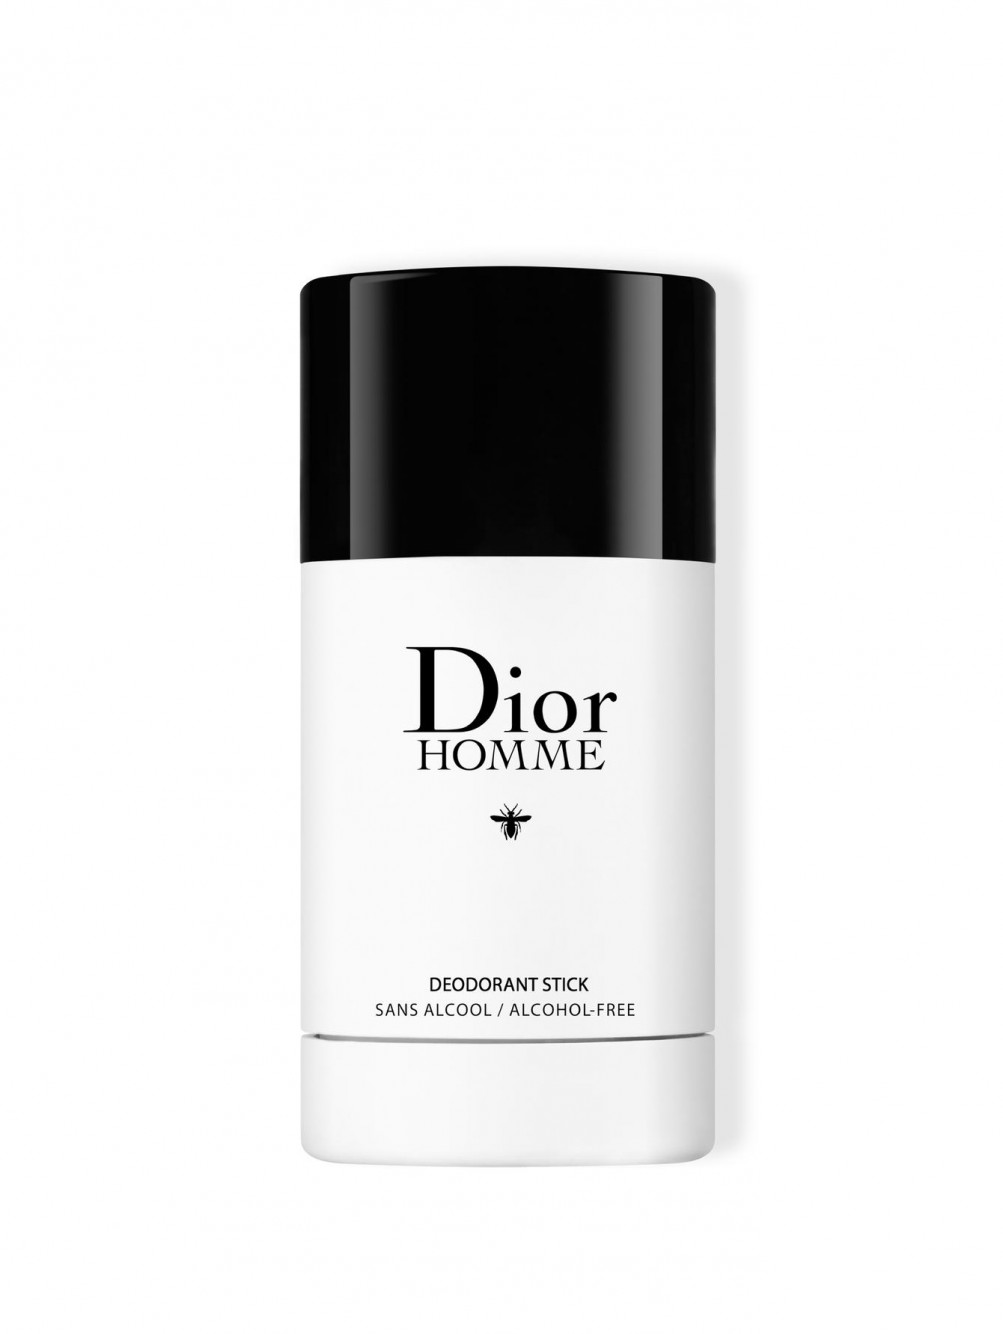 Dior Homme Дезодорант-стик без содержания спирта 75 г - Общий вид